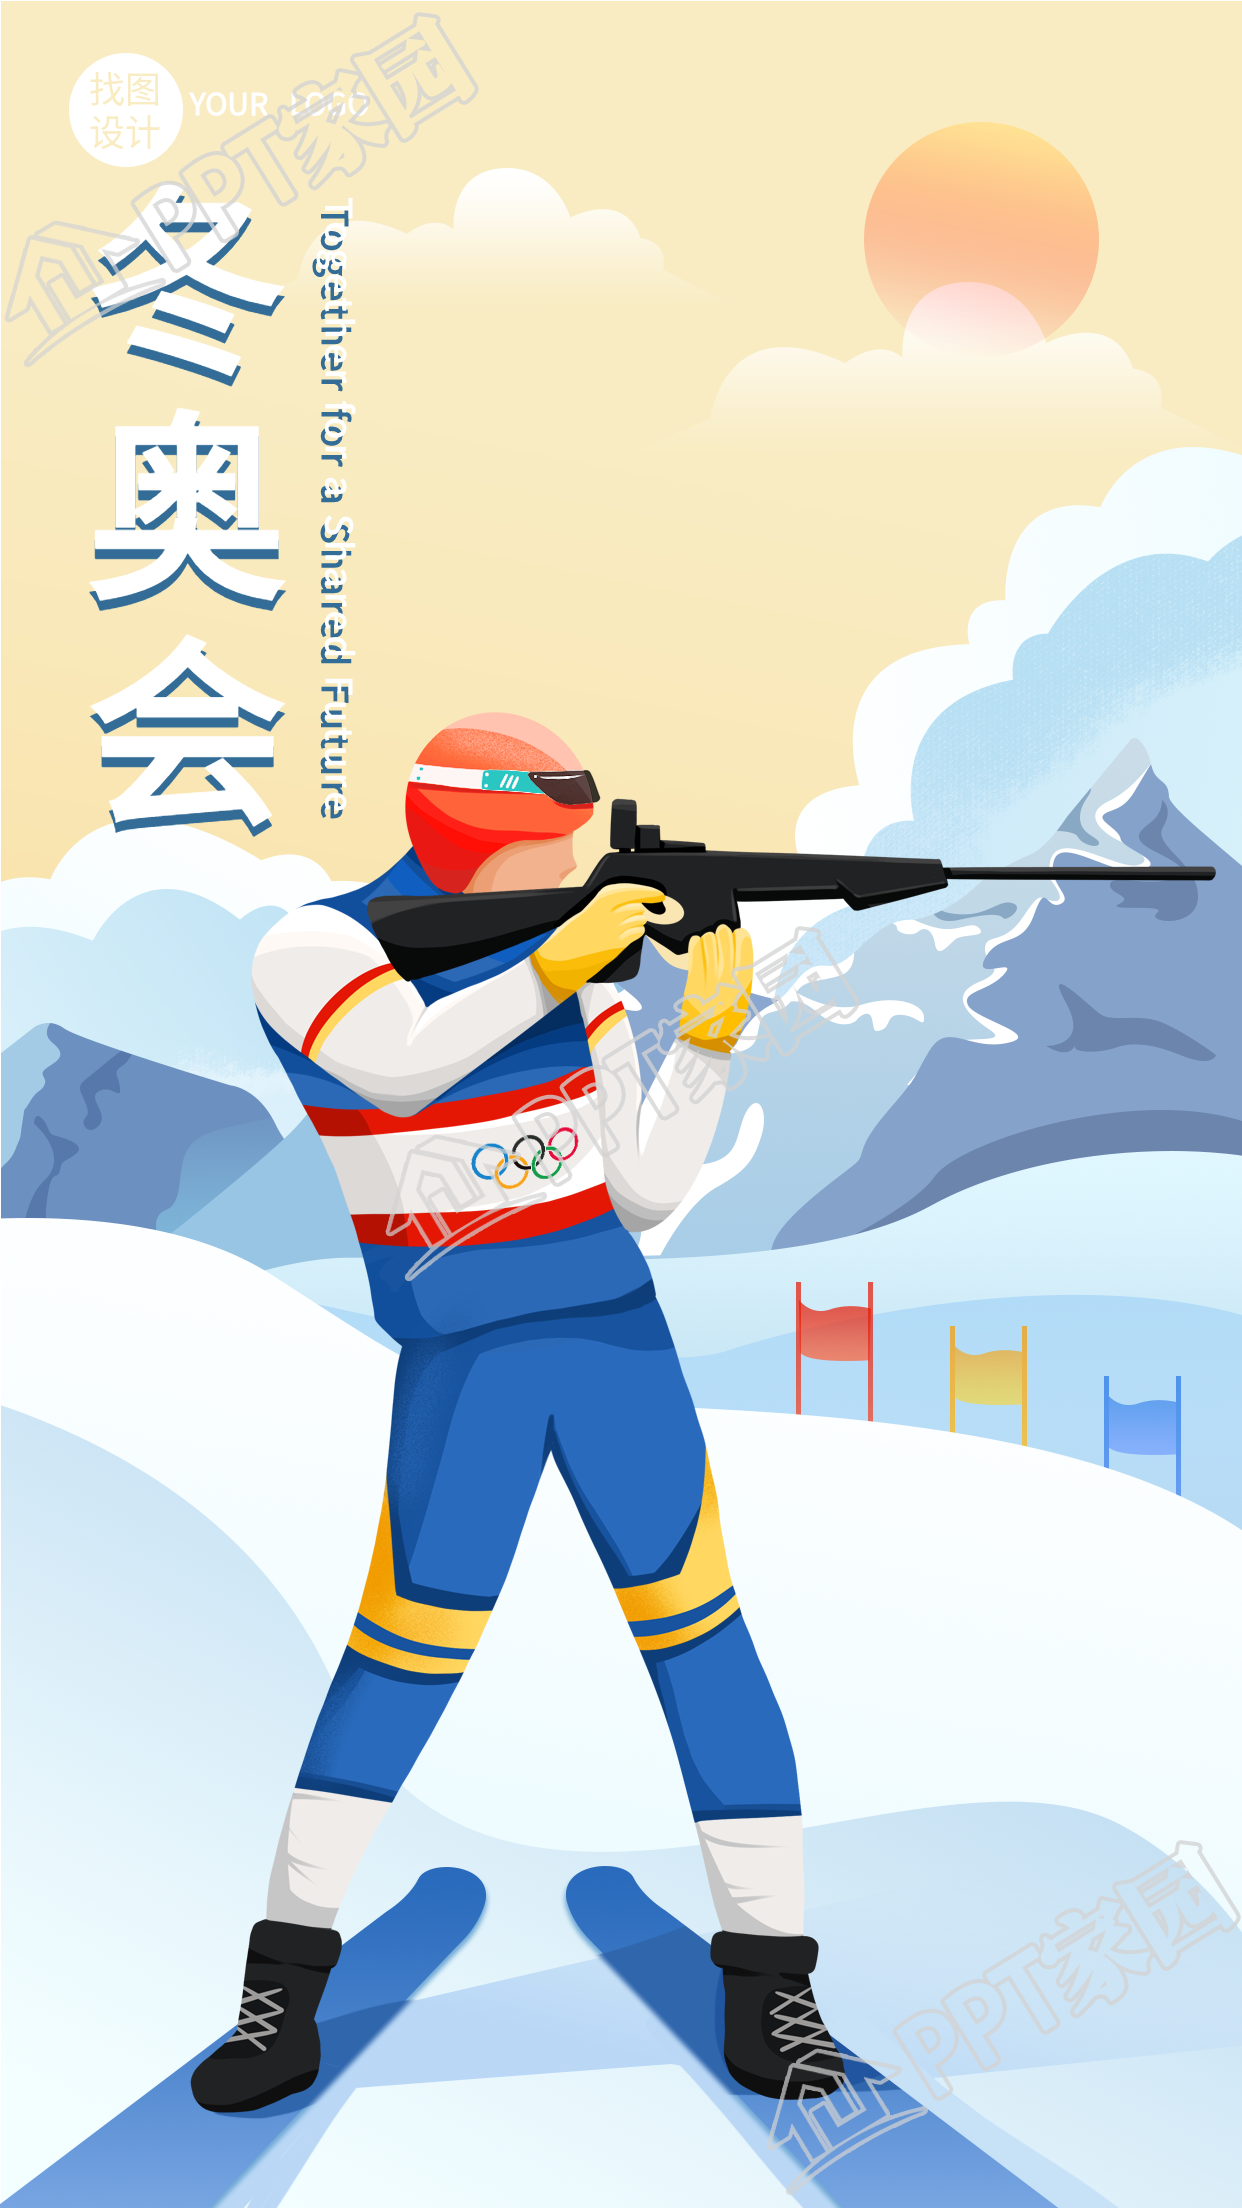 冬奥会两项射击运动竞技比赛手机海报